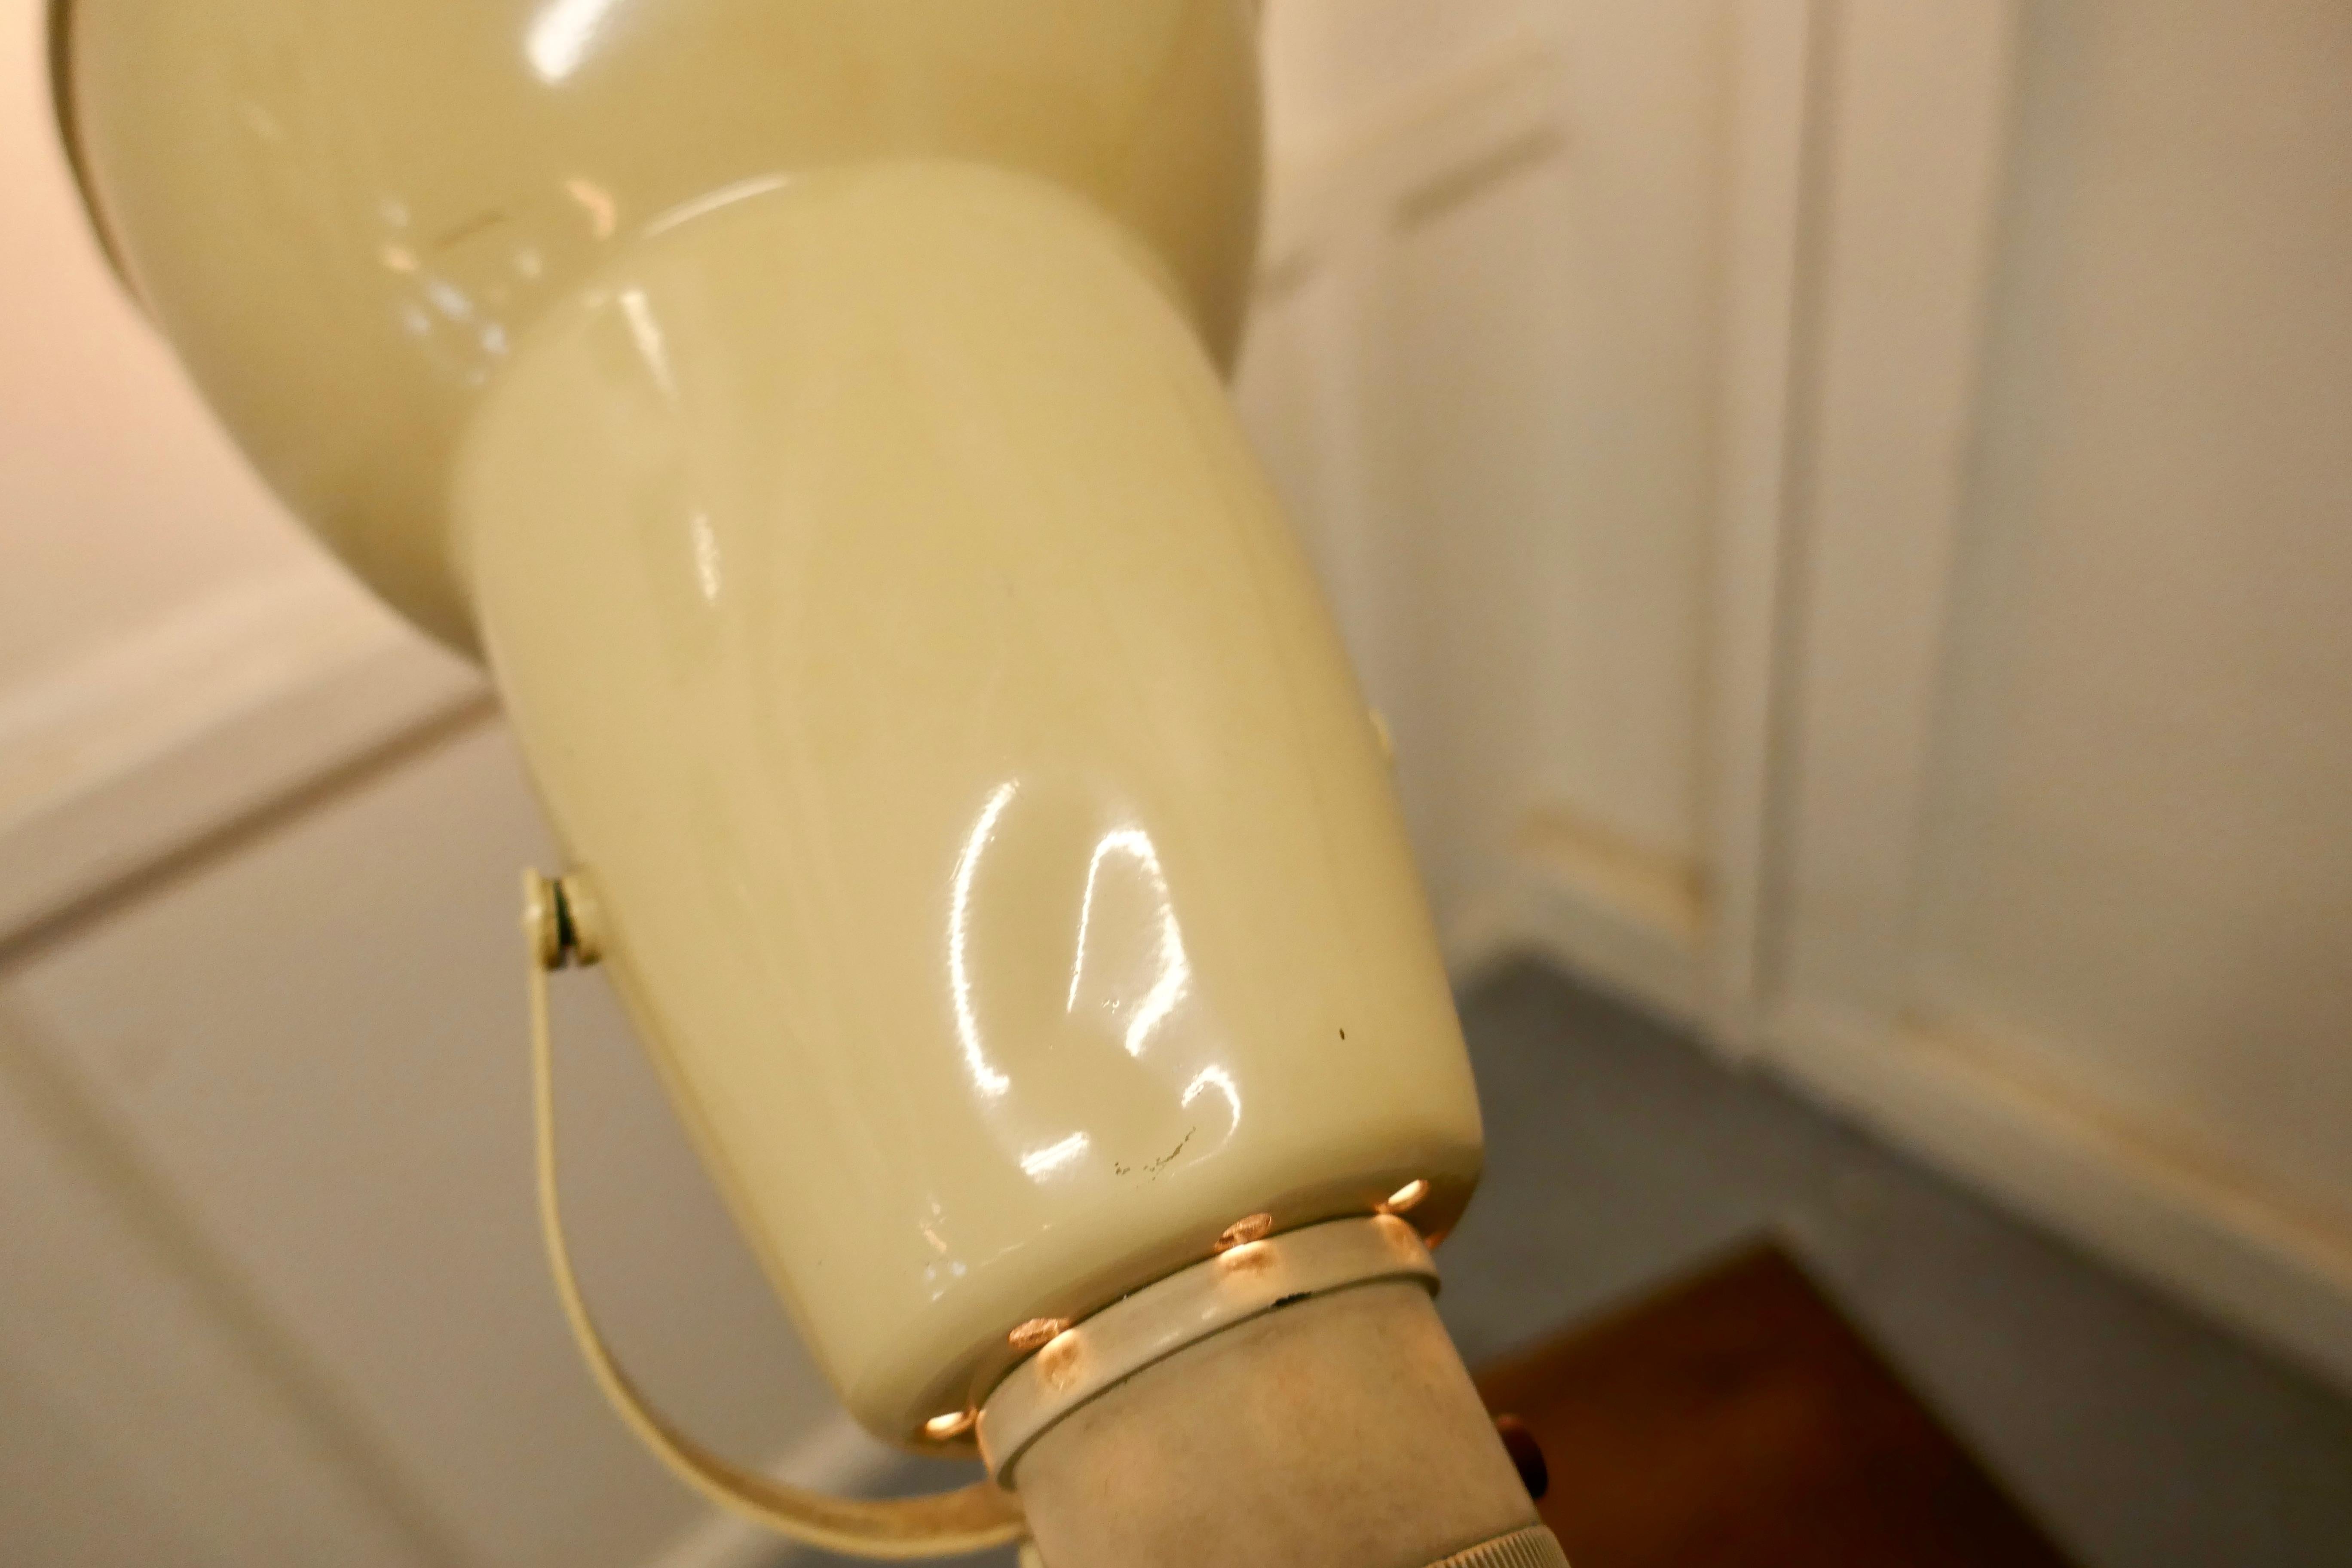 Original Anglepoise-Lampe aus den 1930er Jahren.

Art Deco Periode frühe dreistufige Winkel Poise Lampe von Herbert Terry & Sons Redditch gemacht, die Lampe ist in Pappel Sahne ist es auf einem quadratischen abgestuften Basis gesetzt 

Der